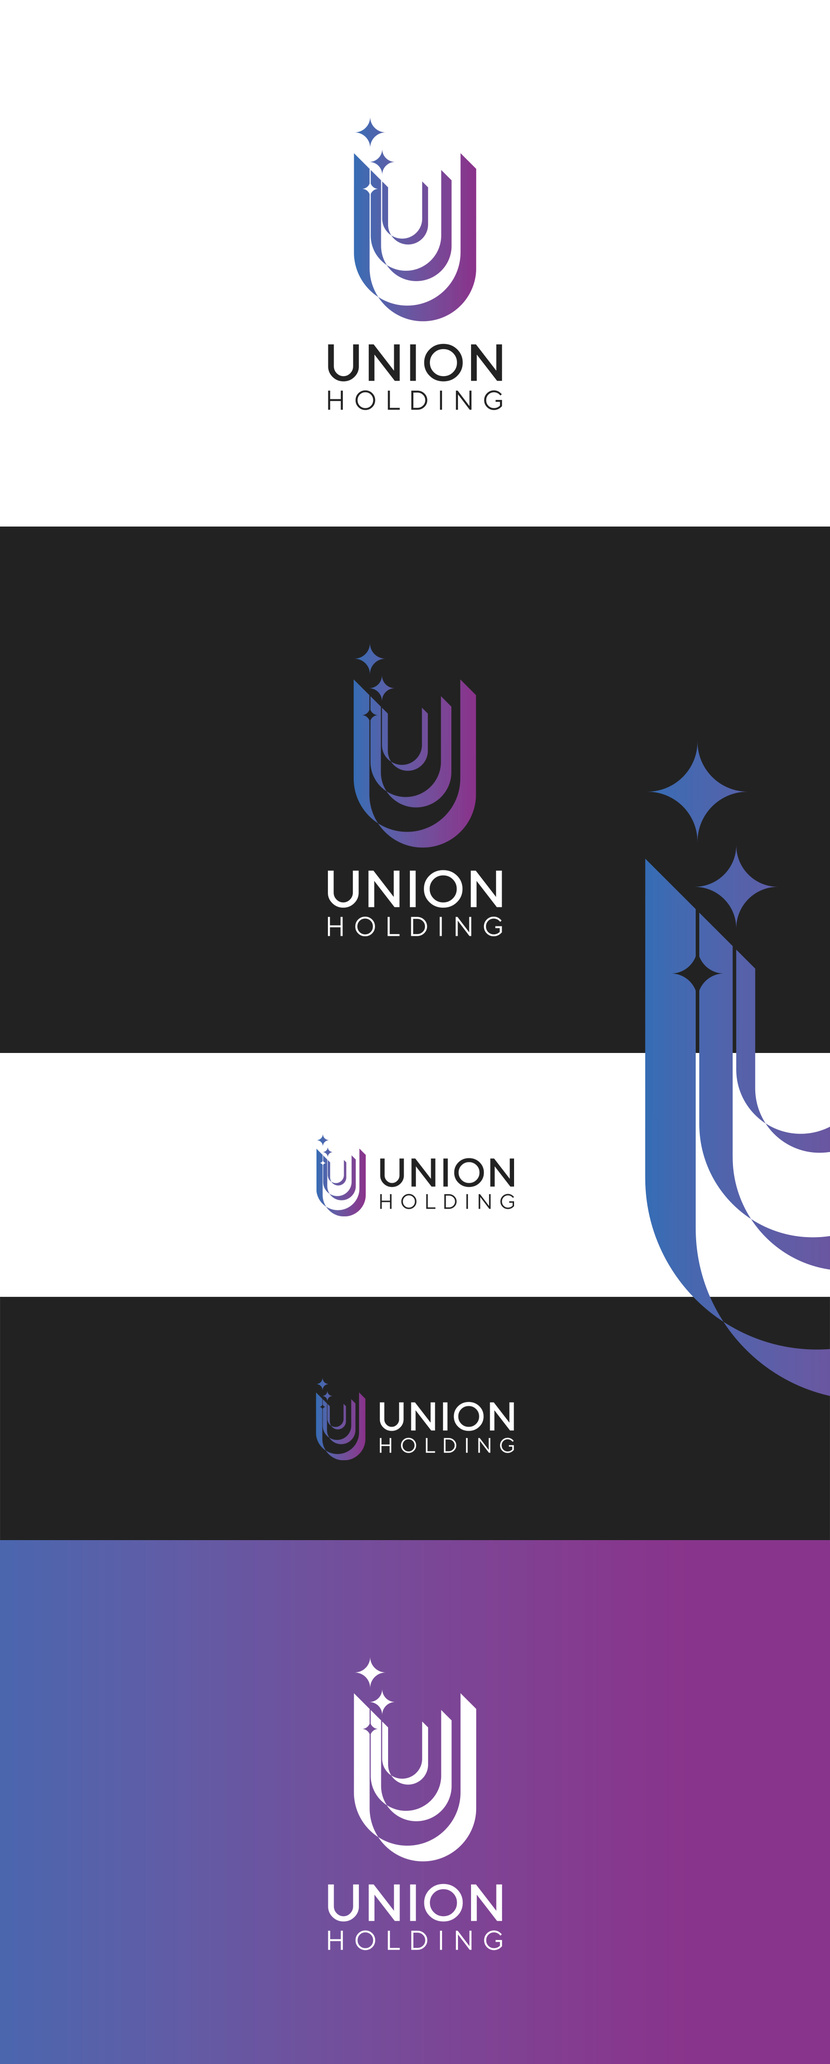 UUU Создание логотипа для холдинга Union holding